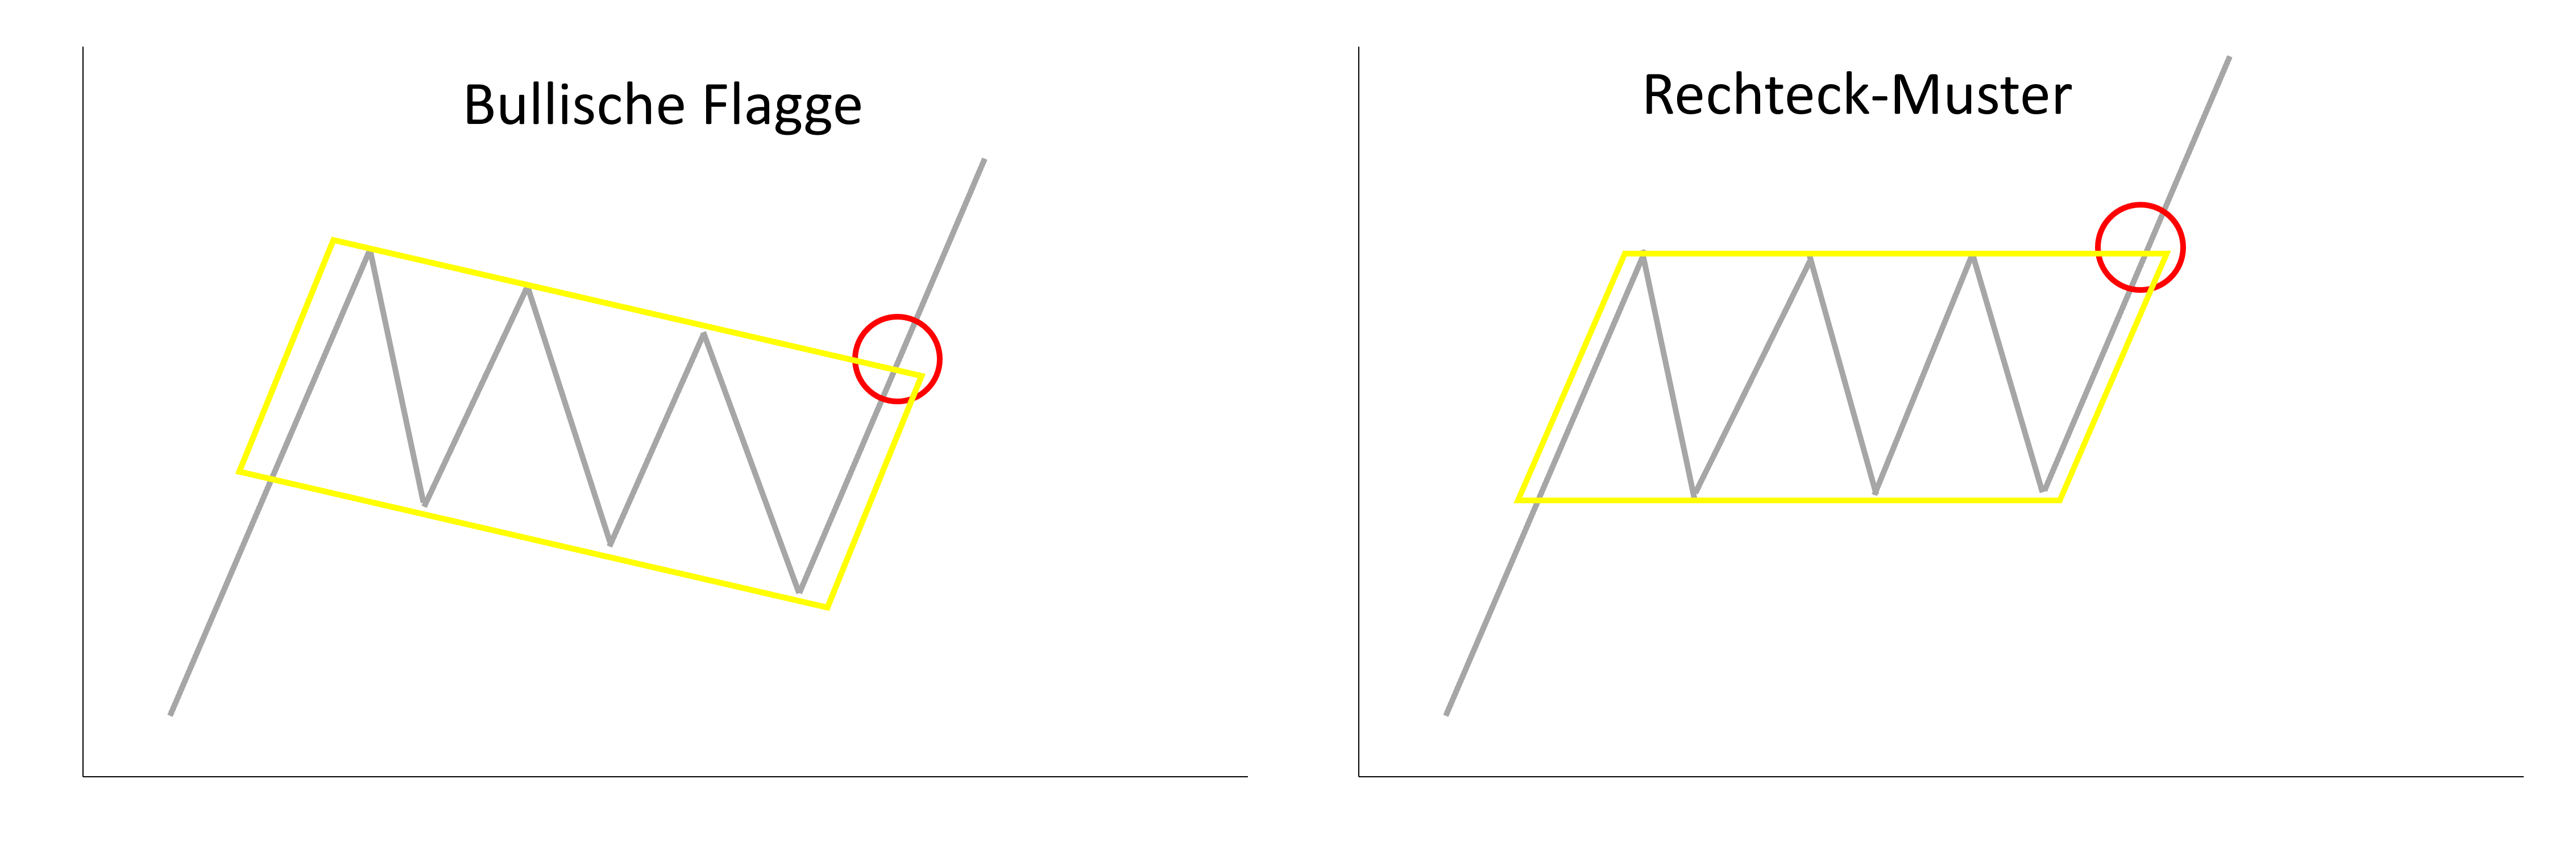 Zwei Charts nebeneinander, die die Bullische Flagge mit dem Rechteck-Muster vergleichen